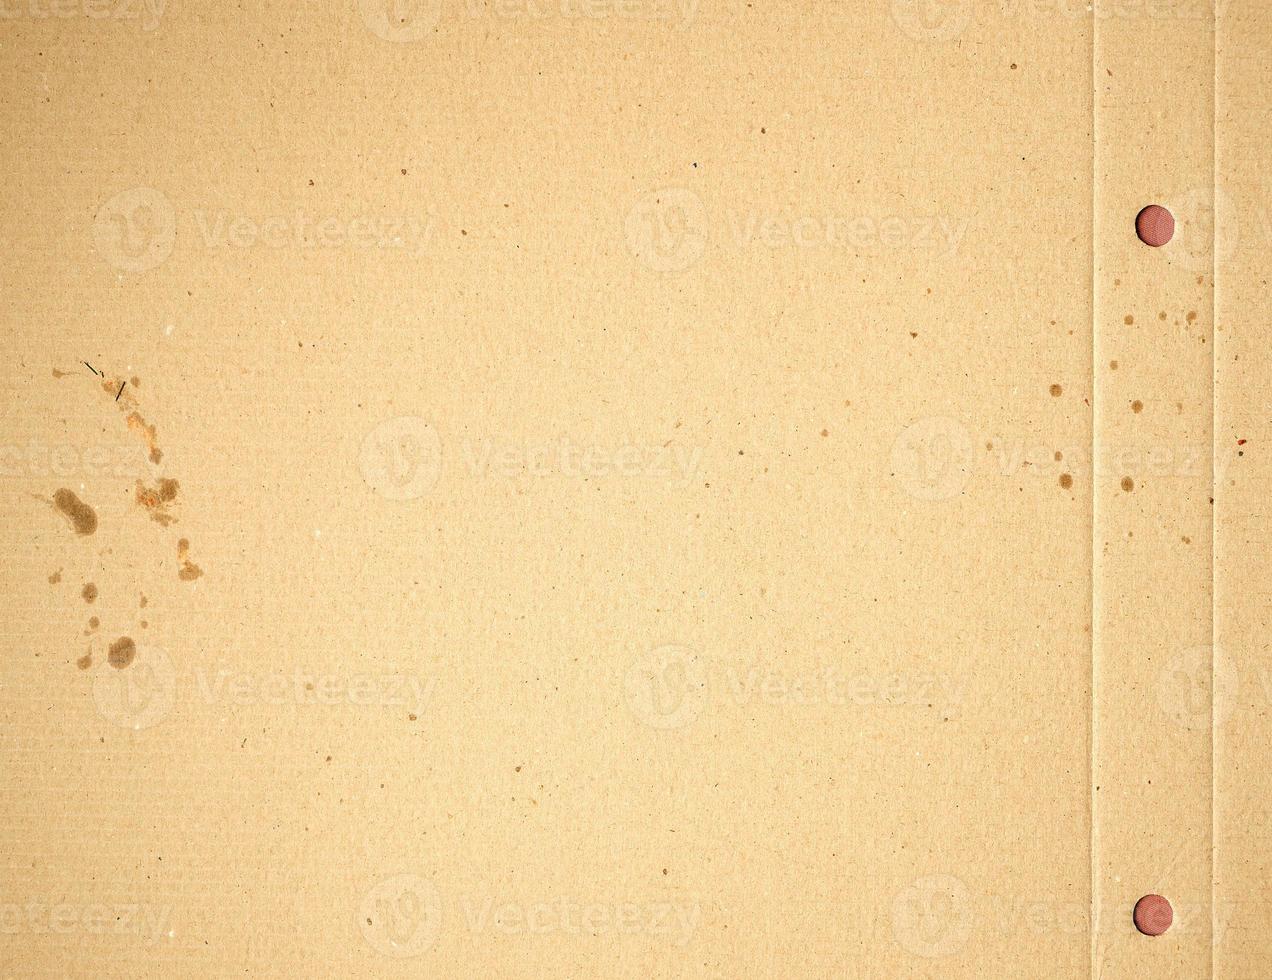 fragment van een bruin papier vel van een doos met vettig vlekken foto